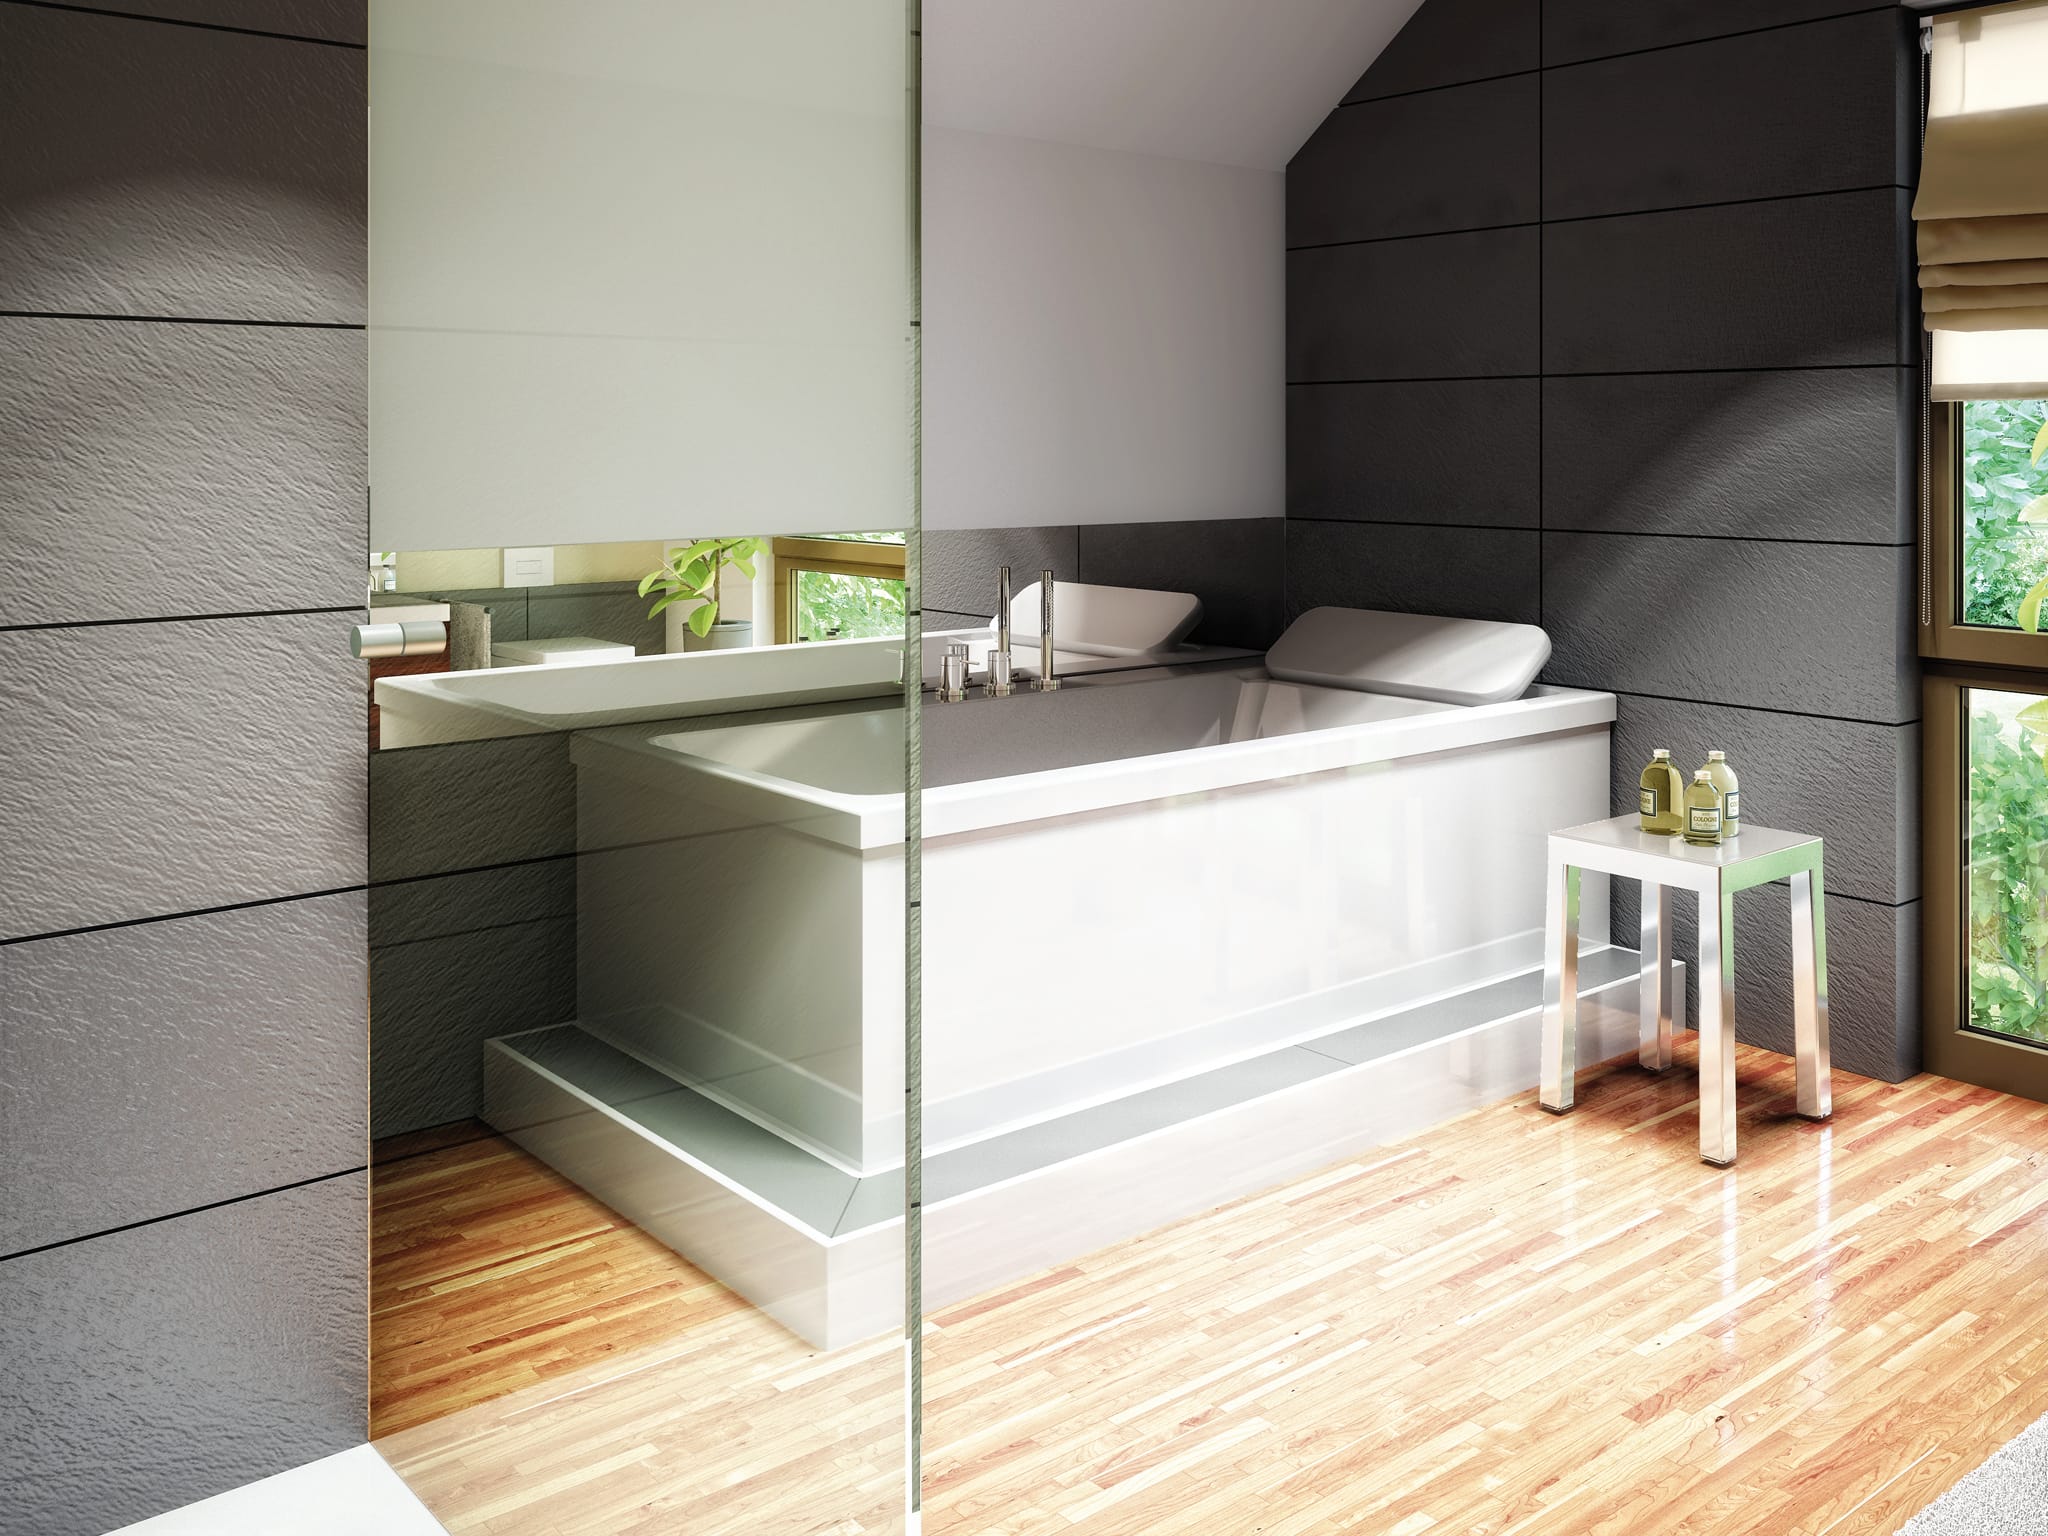 Modernes Badezimmer mit grauen Fliesen - Interior Design Fertighaus Living Haus SUNSHINE 136 V5 - HausbauDirekt.de